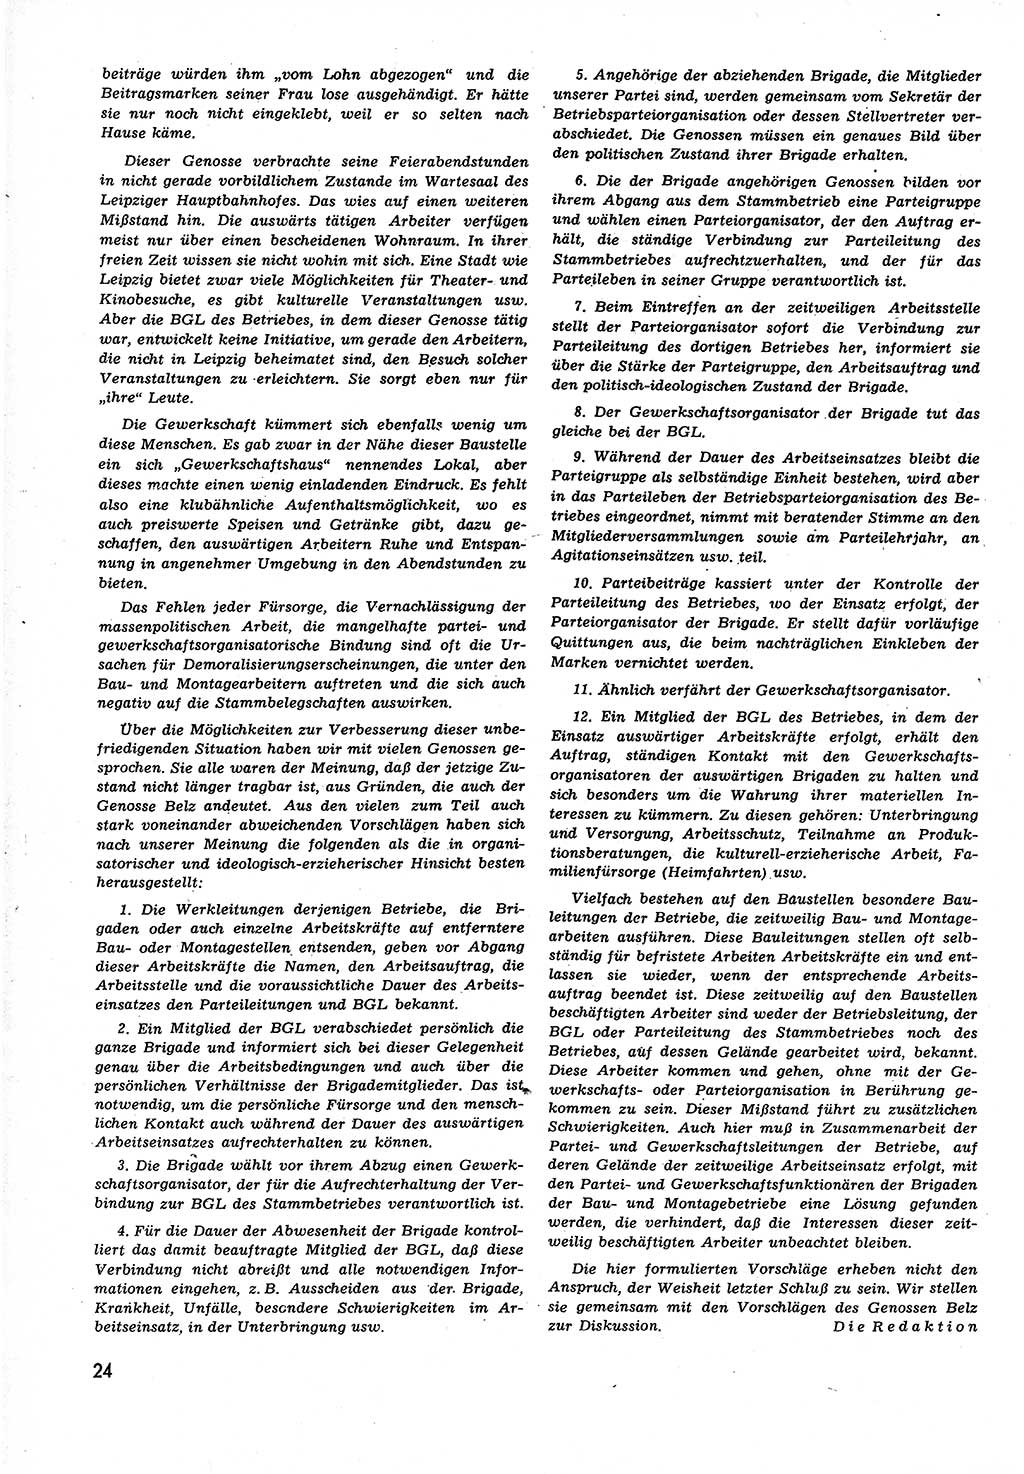 Neuer Weg (NW), Organ des Zentralkomitees (ZK) der SED (Sozialistische Einheitspartei Deutschlands) für alle Parteiarbeiter, 9. Jahrgang [Deutsche Demokratische Republik (DDR)] 1954, Heft 11/24 (NW ZK SED DDR 1954, H. 11/24)